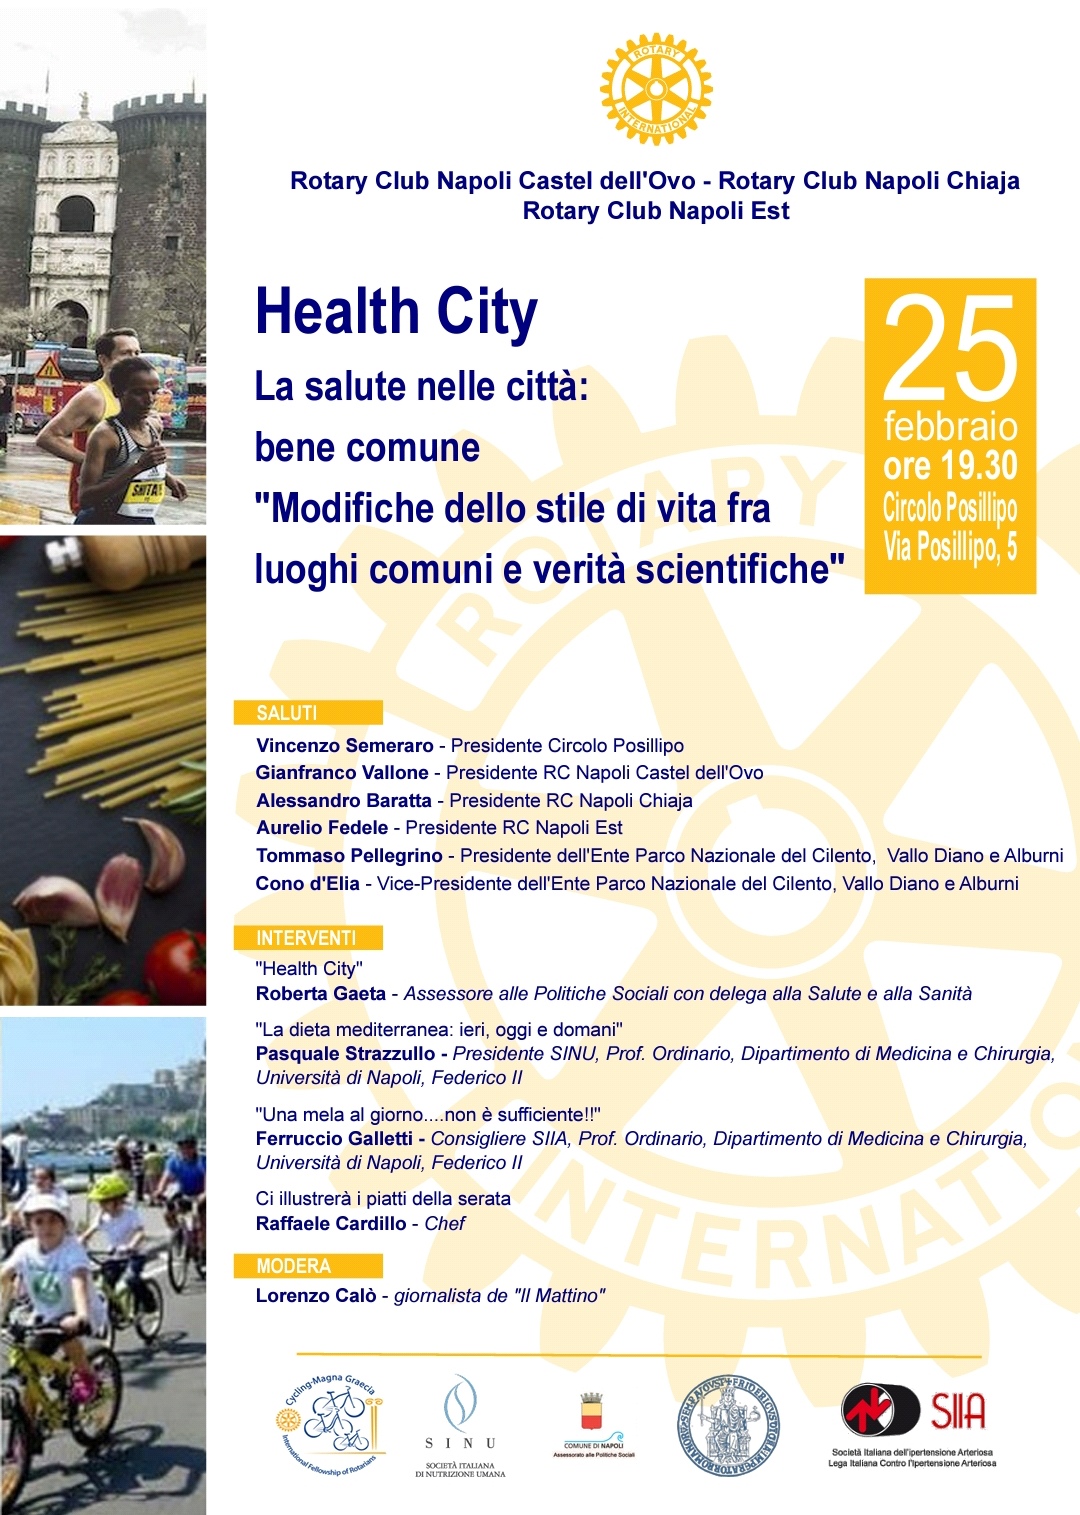 Health City: la salute nelle città bene comune – Conviviale lunedì 25 febbraio